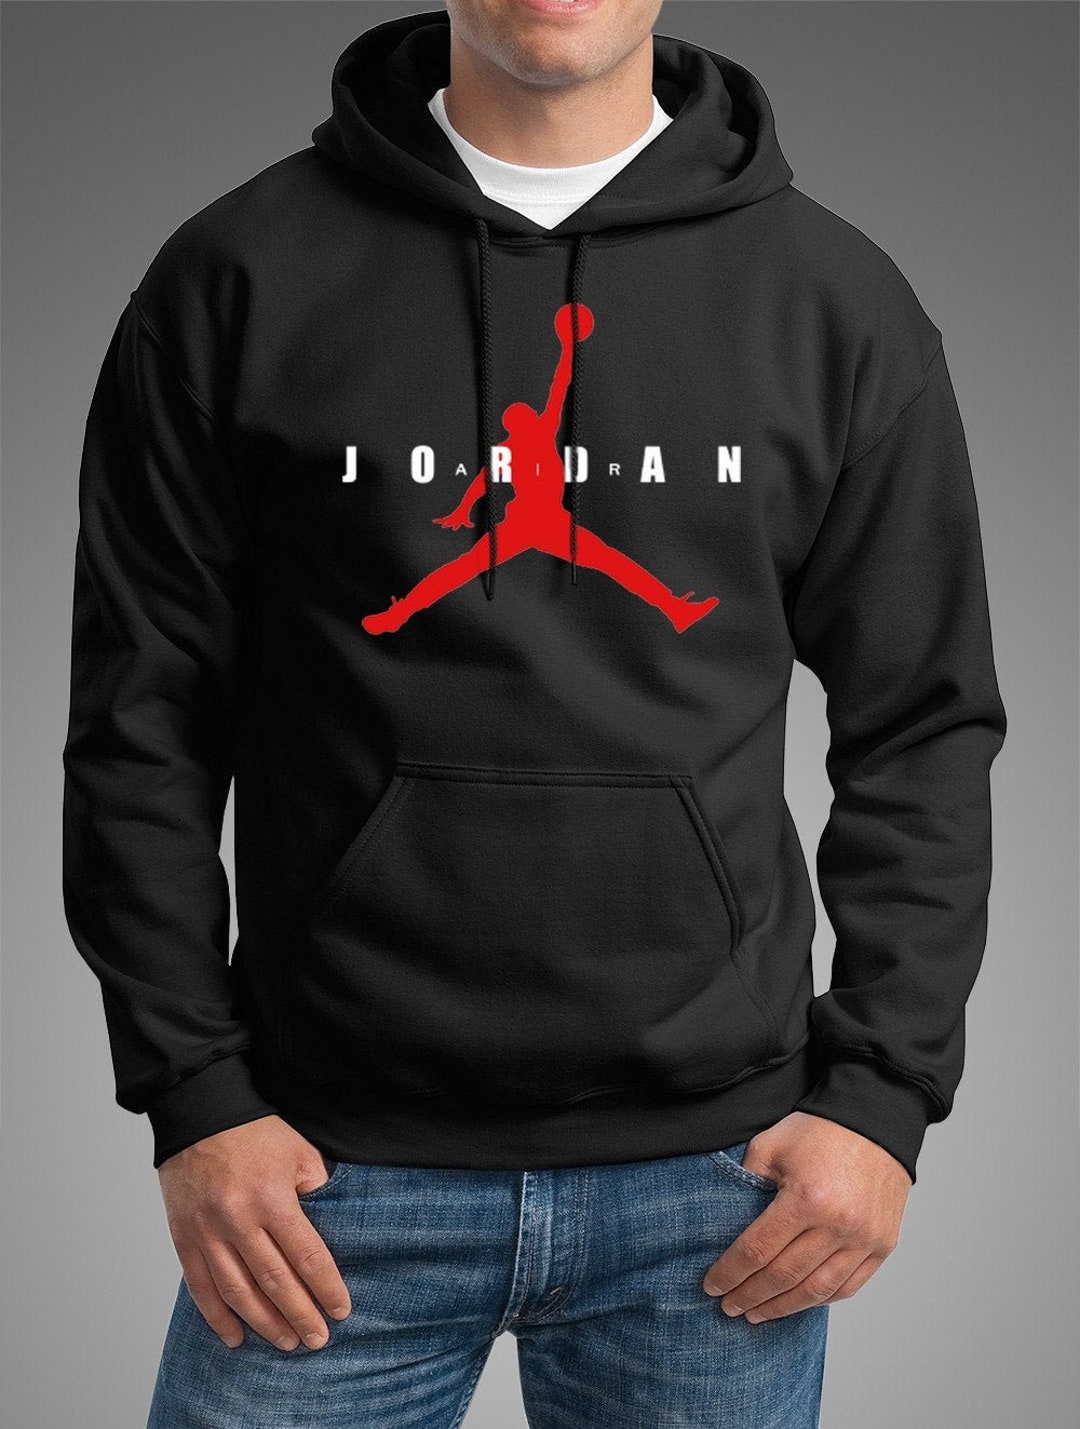 jordan hoodie black